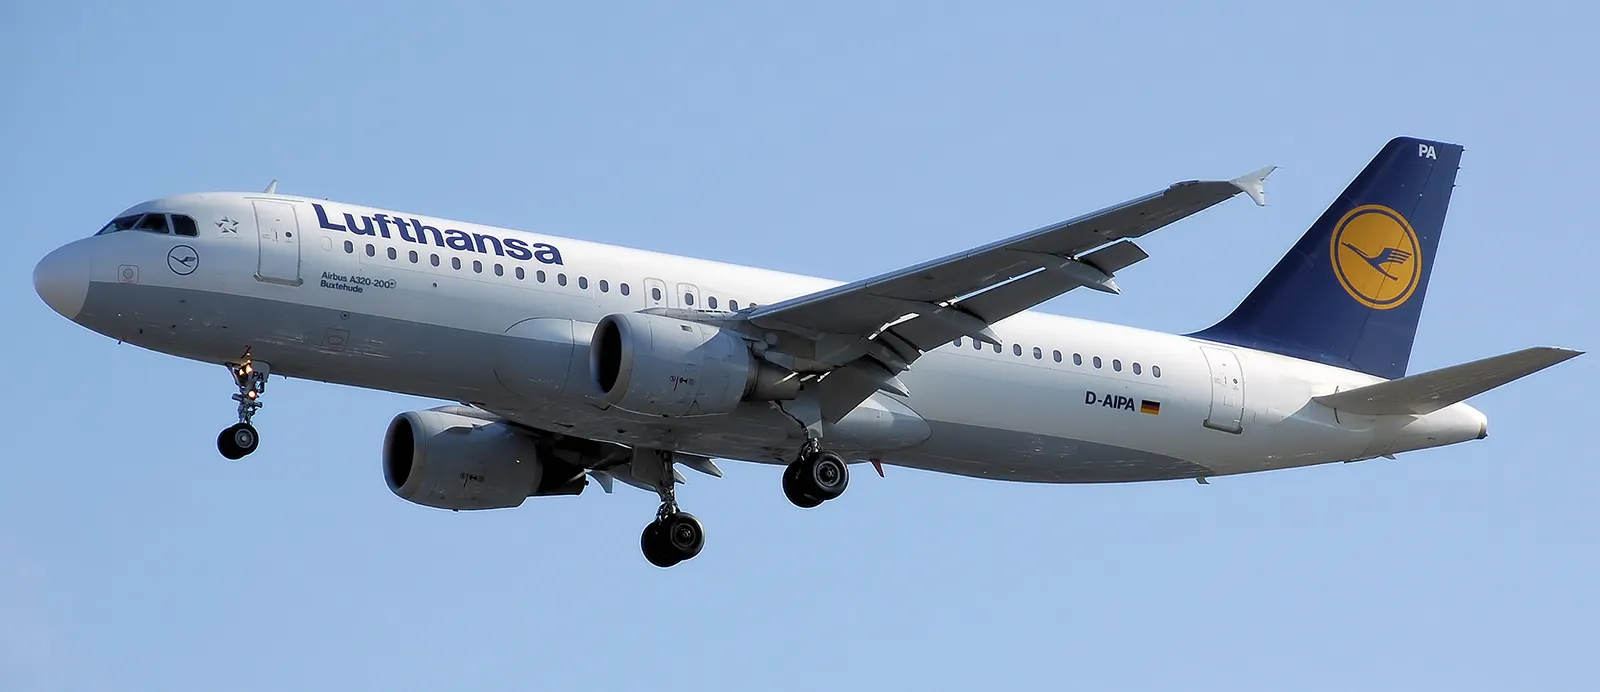 Lufthansa Airbus A320 200